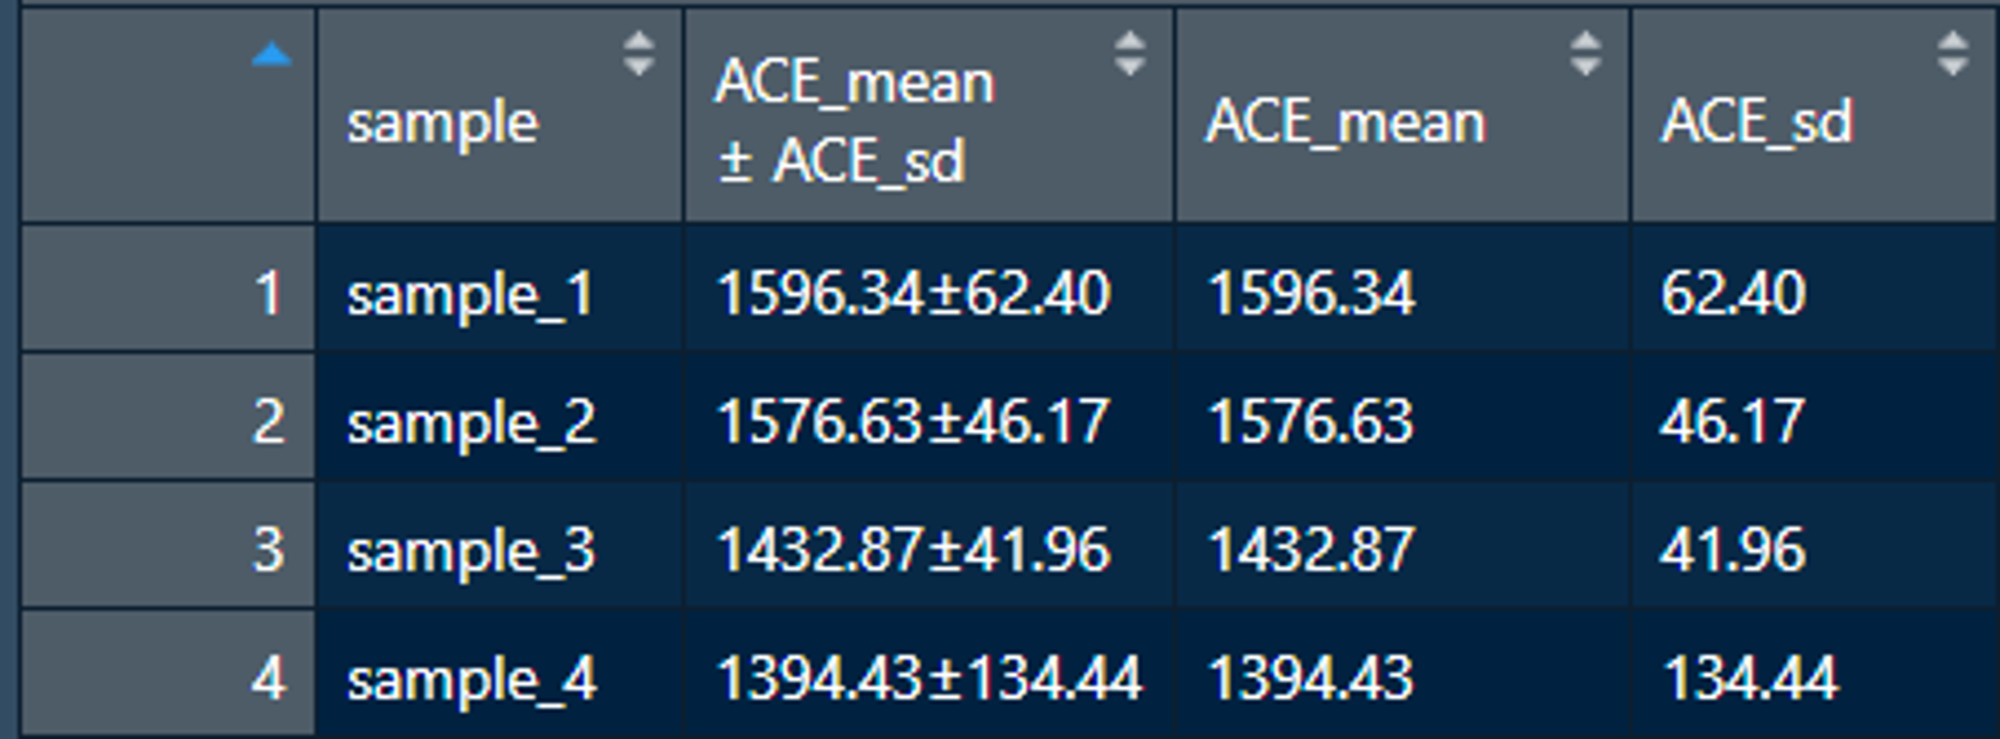 图2.2-2 添加ACE_mean ± ACE_sd列